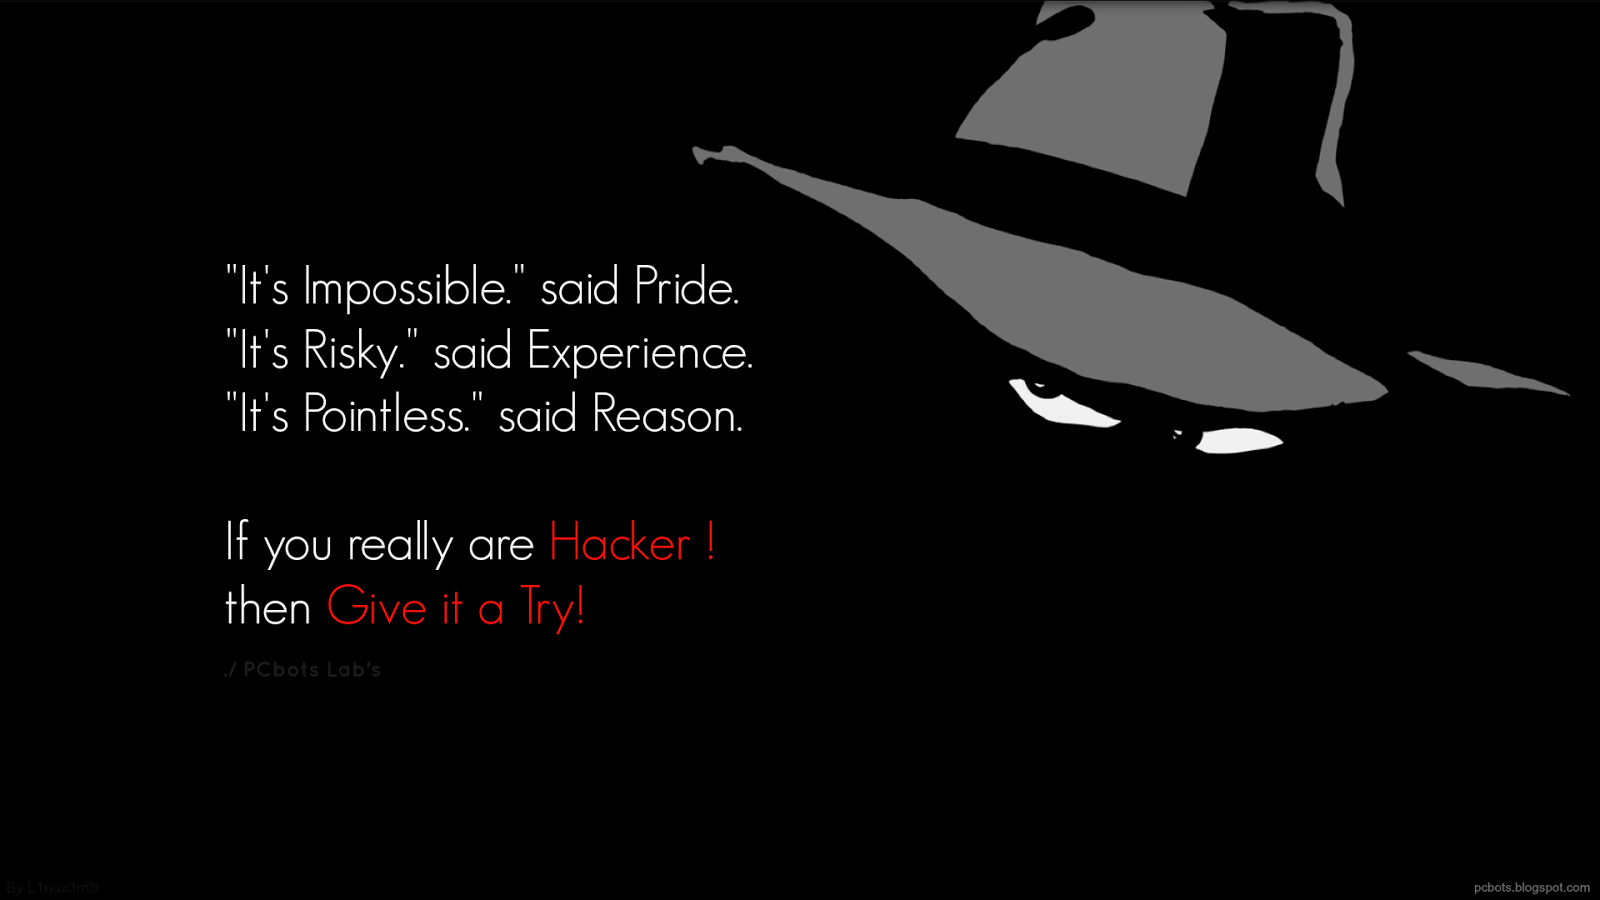 Black Hat Hacker Grey hat hacker hd wallpaper